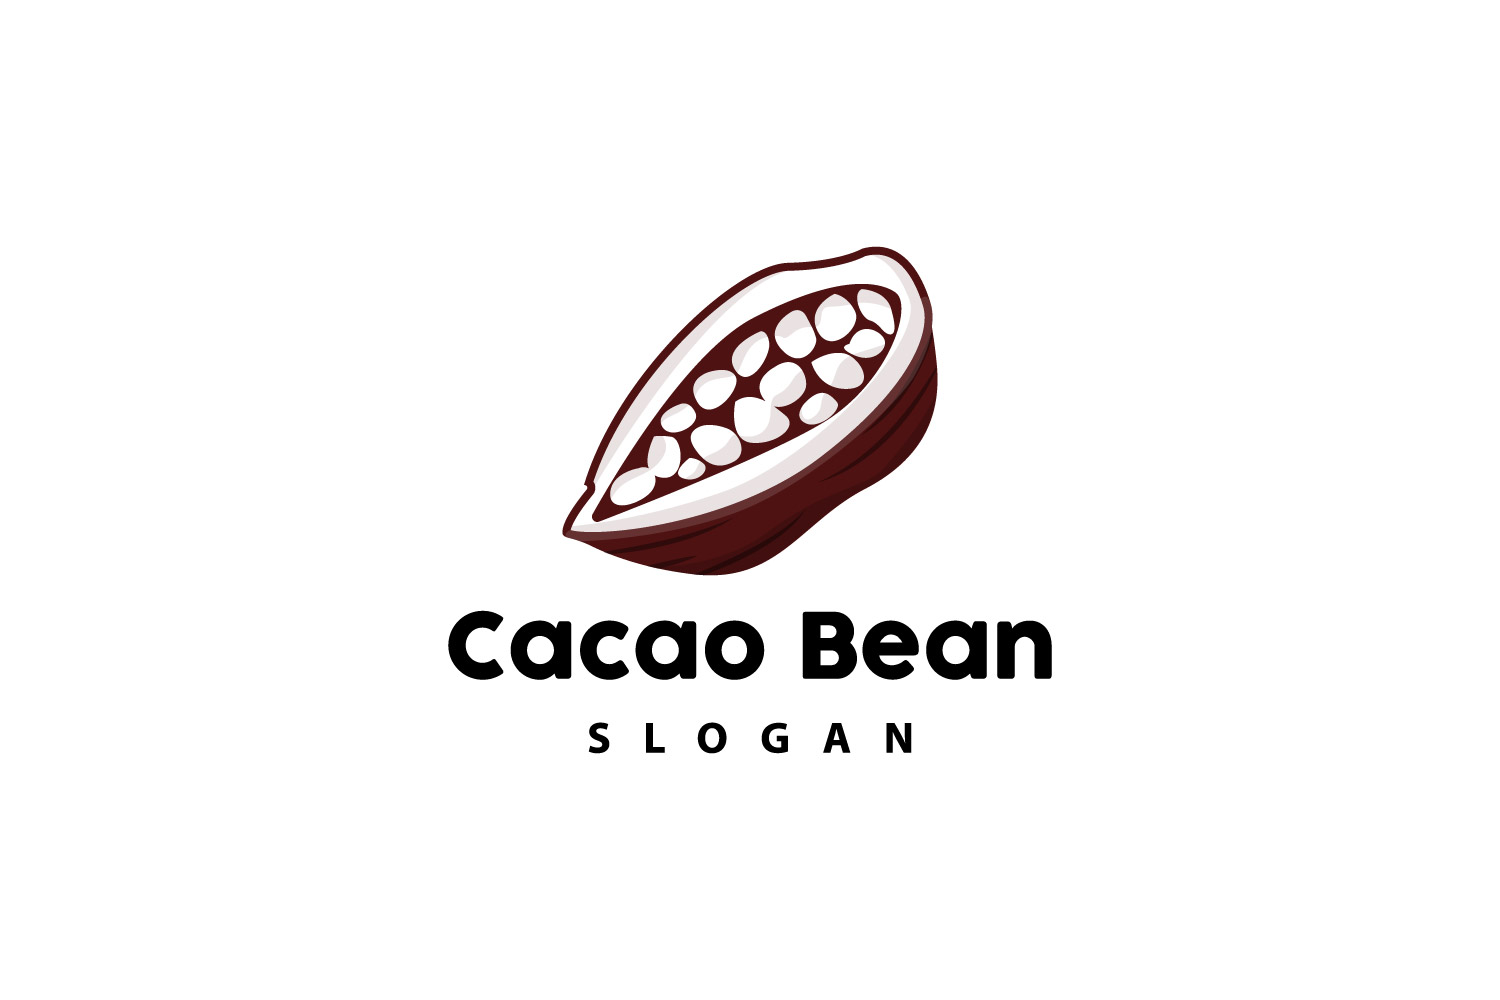 Cacao Bean Logo Premium Design VintageV6